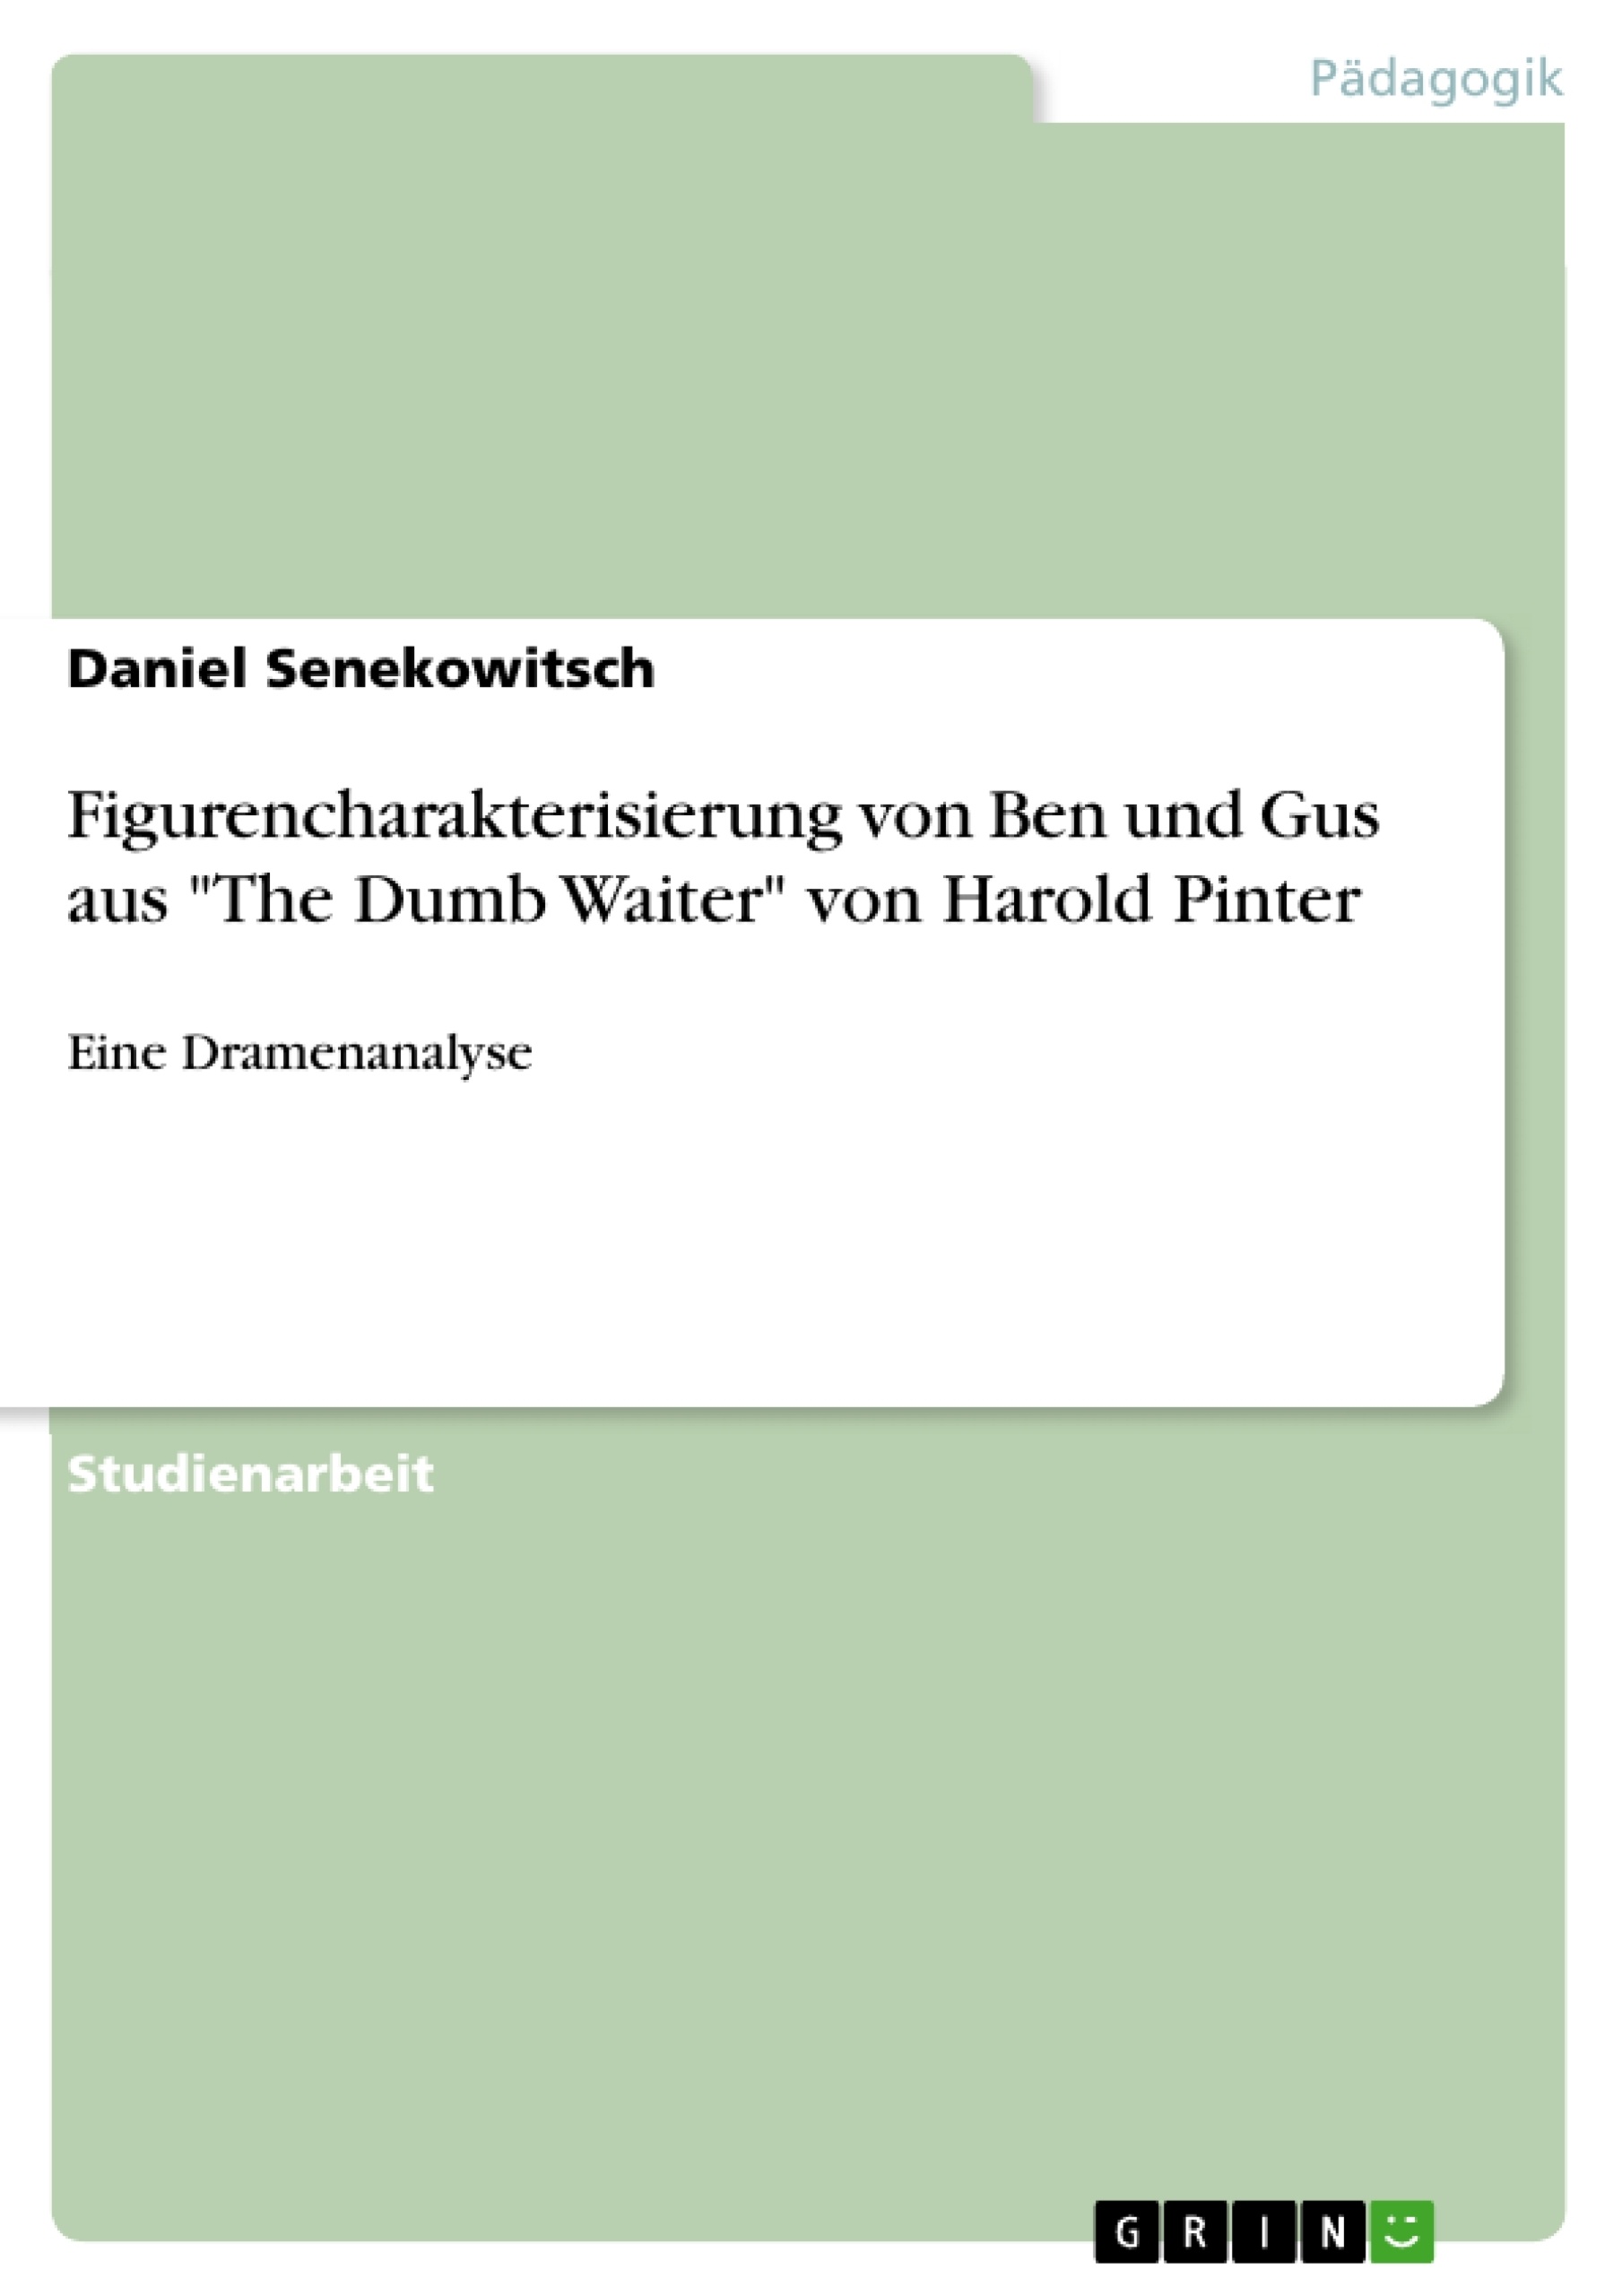 Título: Figurencharakterisierung von Ben und Gus aus "The Dumb Waiter" von Harold Pinter